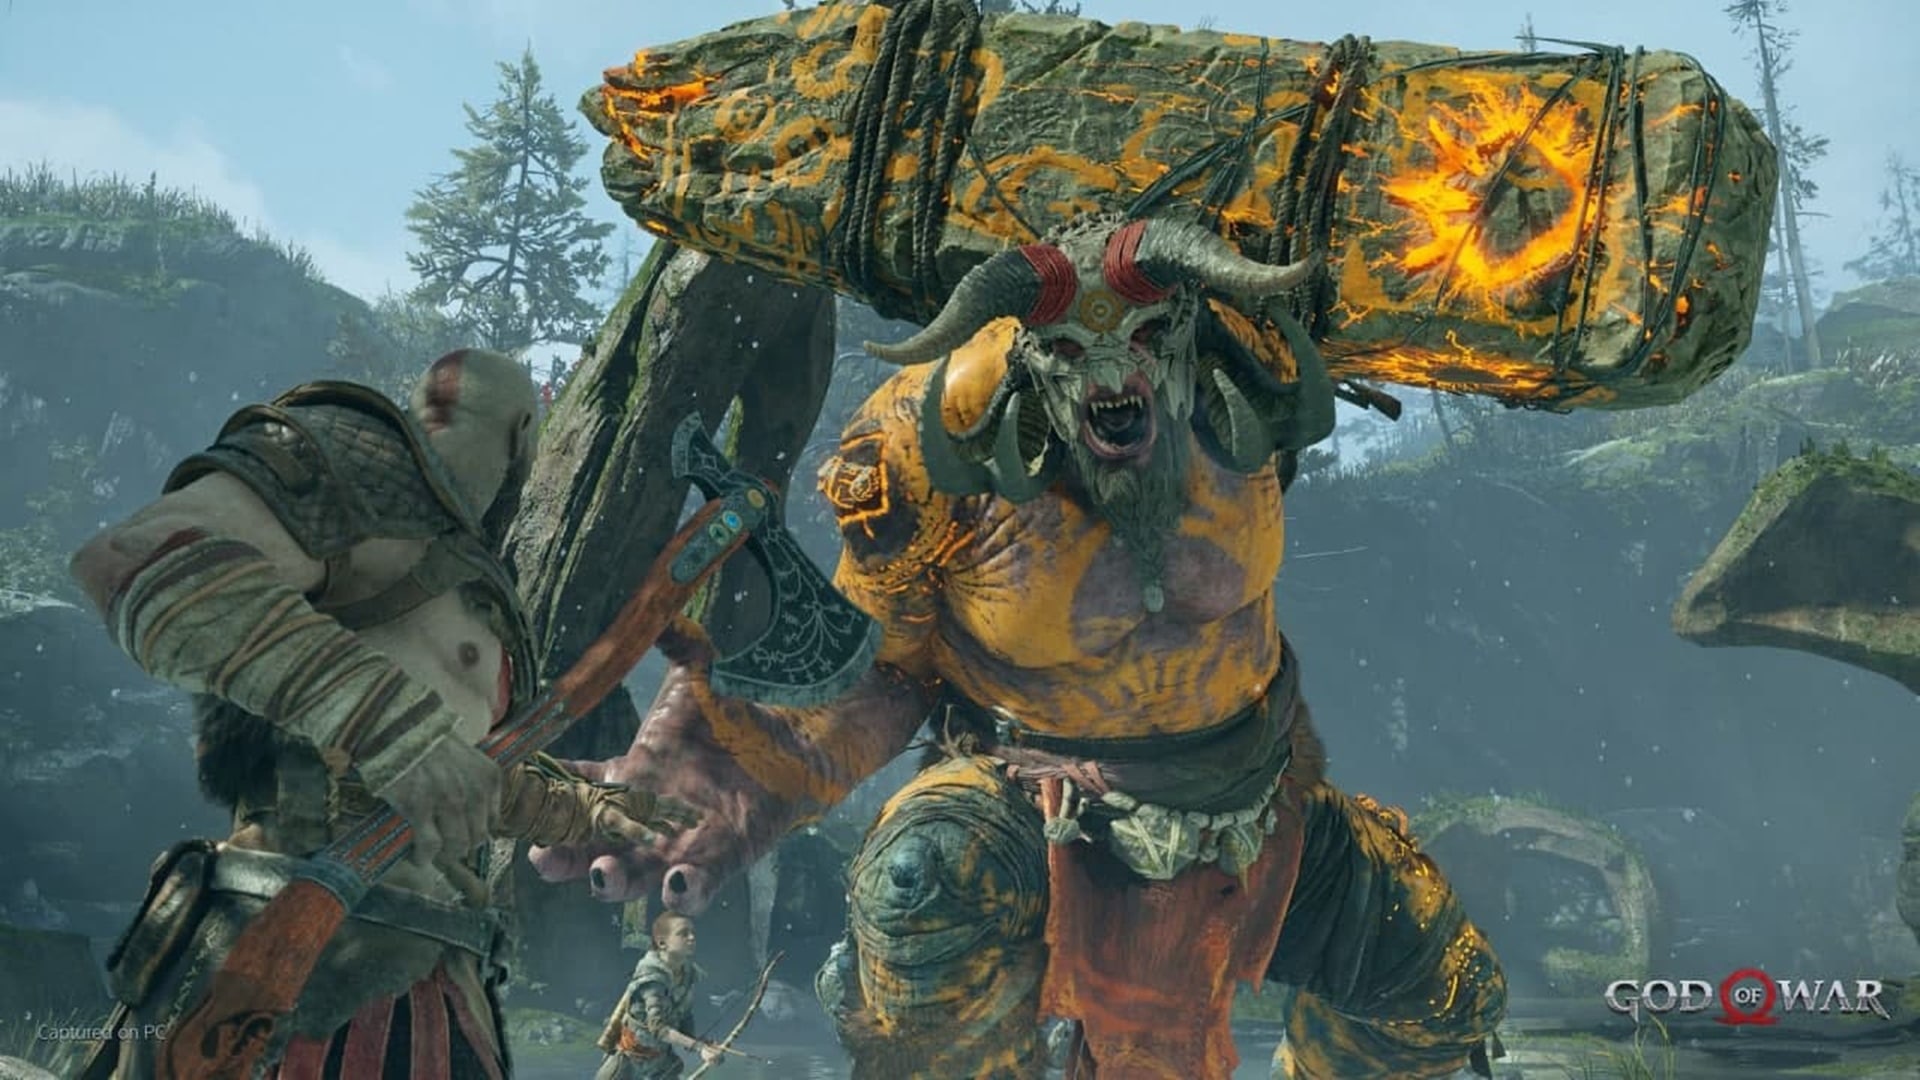 El director de God of War dice que varios desarrolladores molestaron a Sony para llevar sus juegos a PC, GamersRD